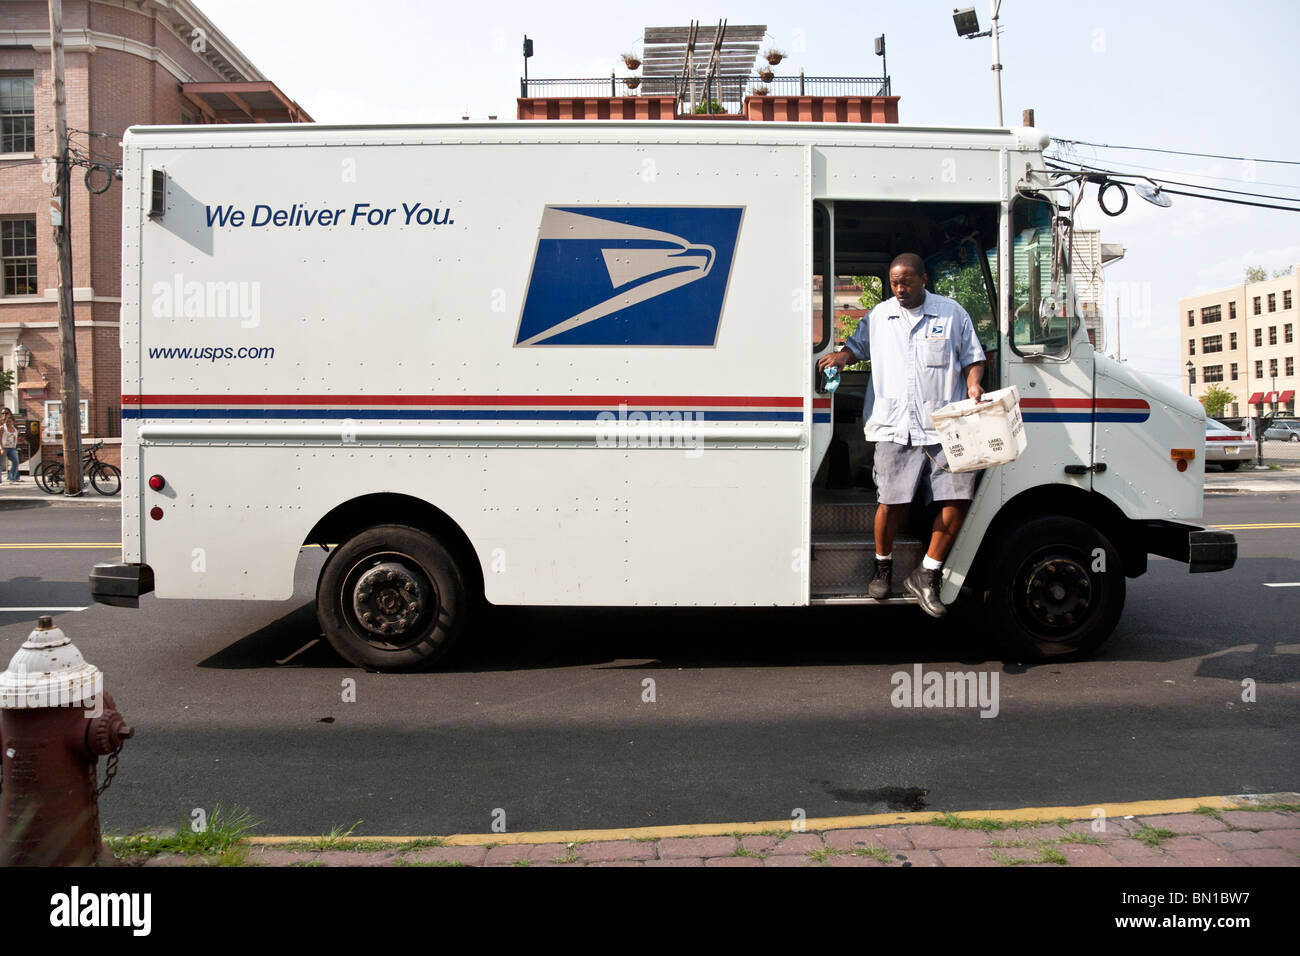 Black mail carrier étapes sur face de United States Postal Service delivery truck dans les quartiers chics de la ville de Hoboken, New Jersey Banque D'Images